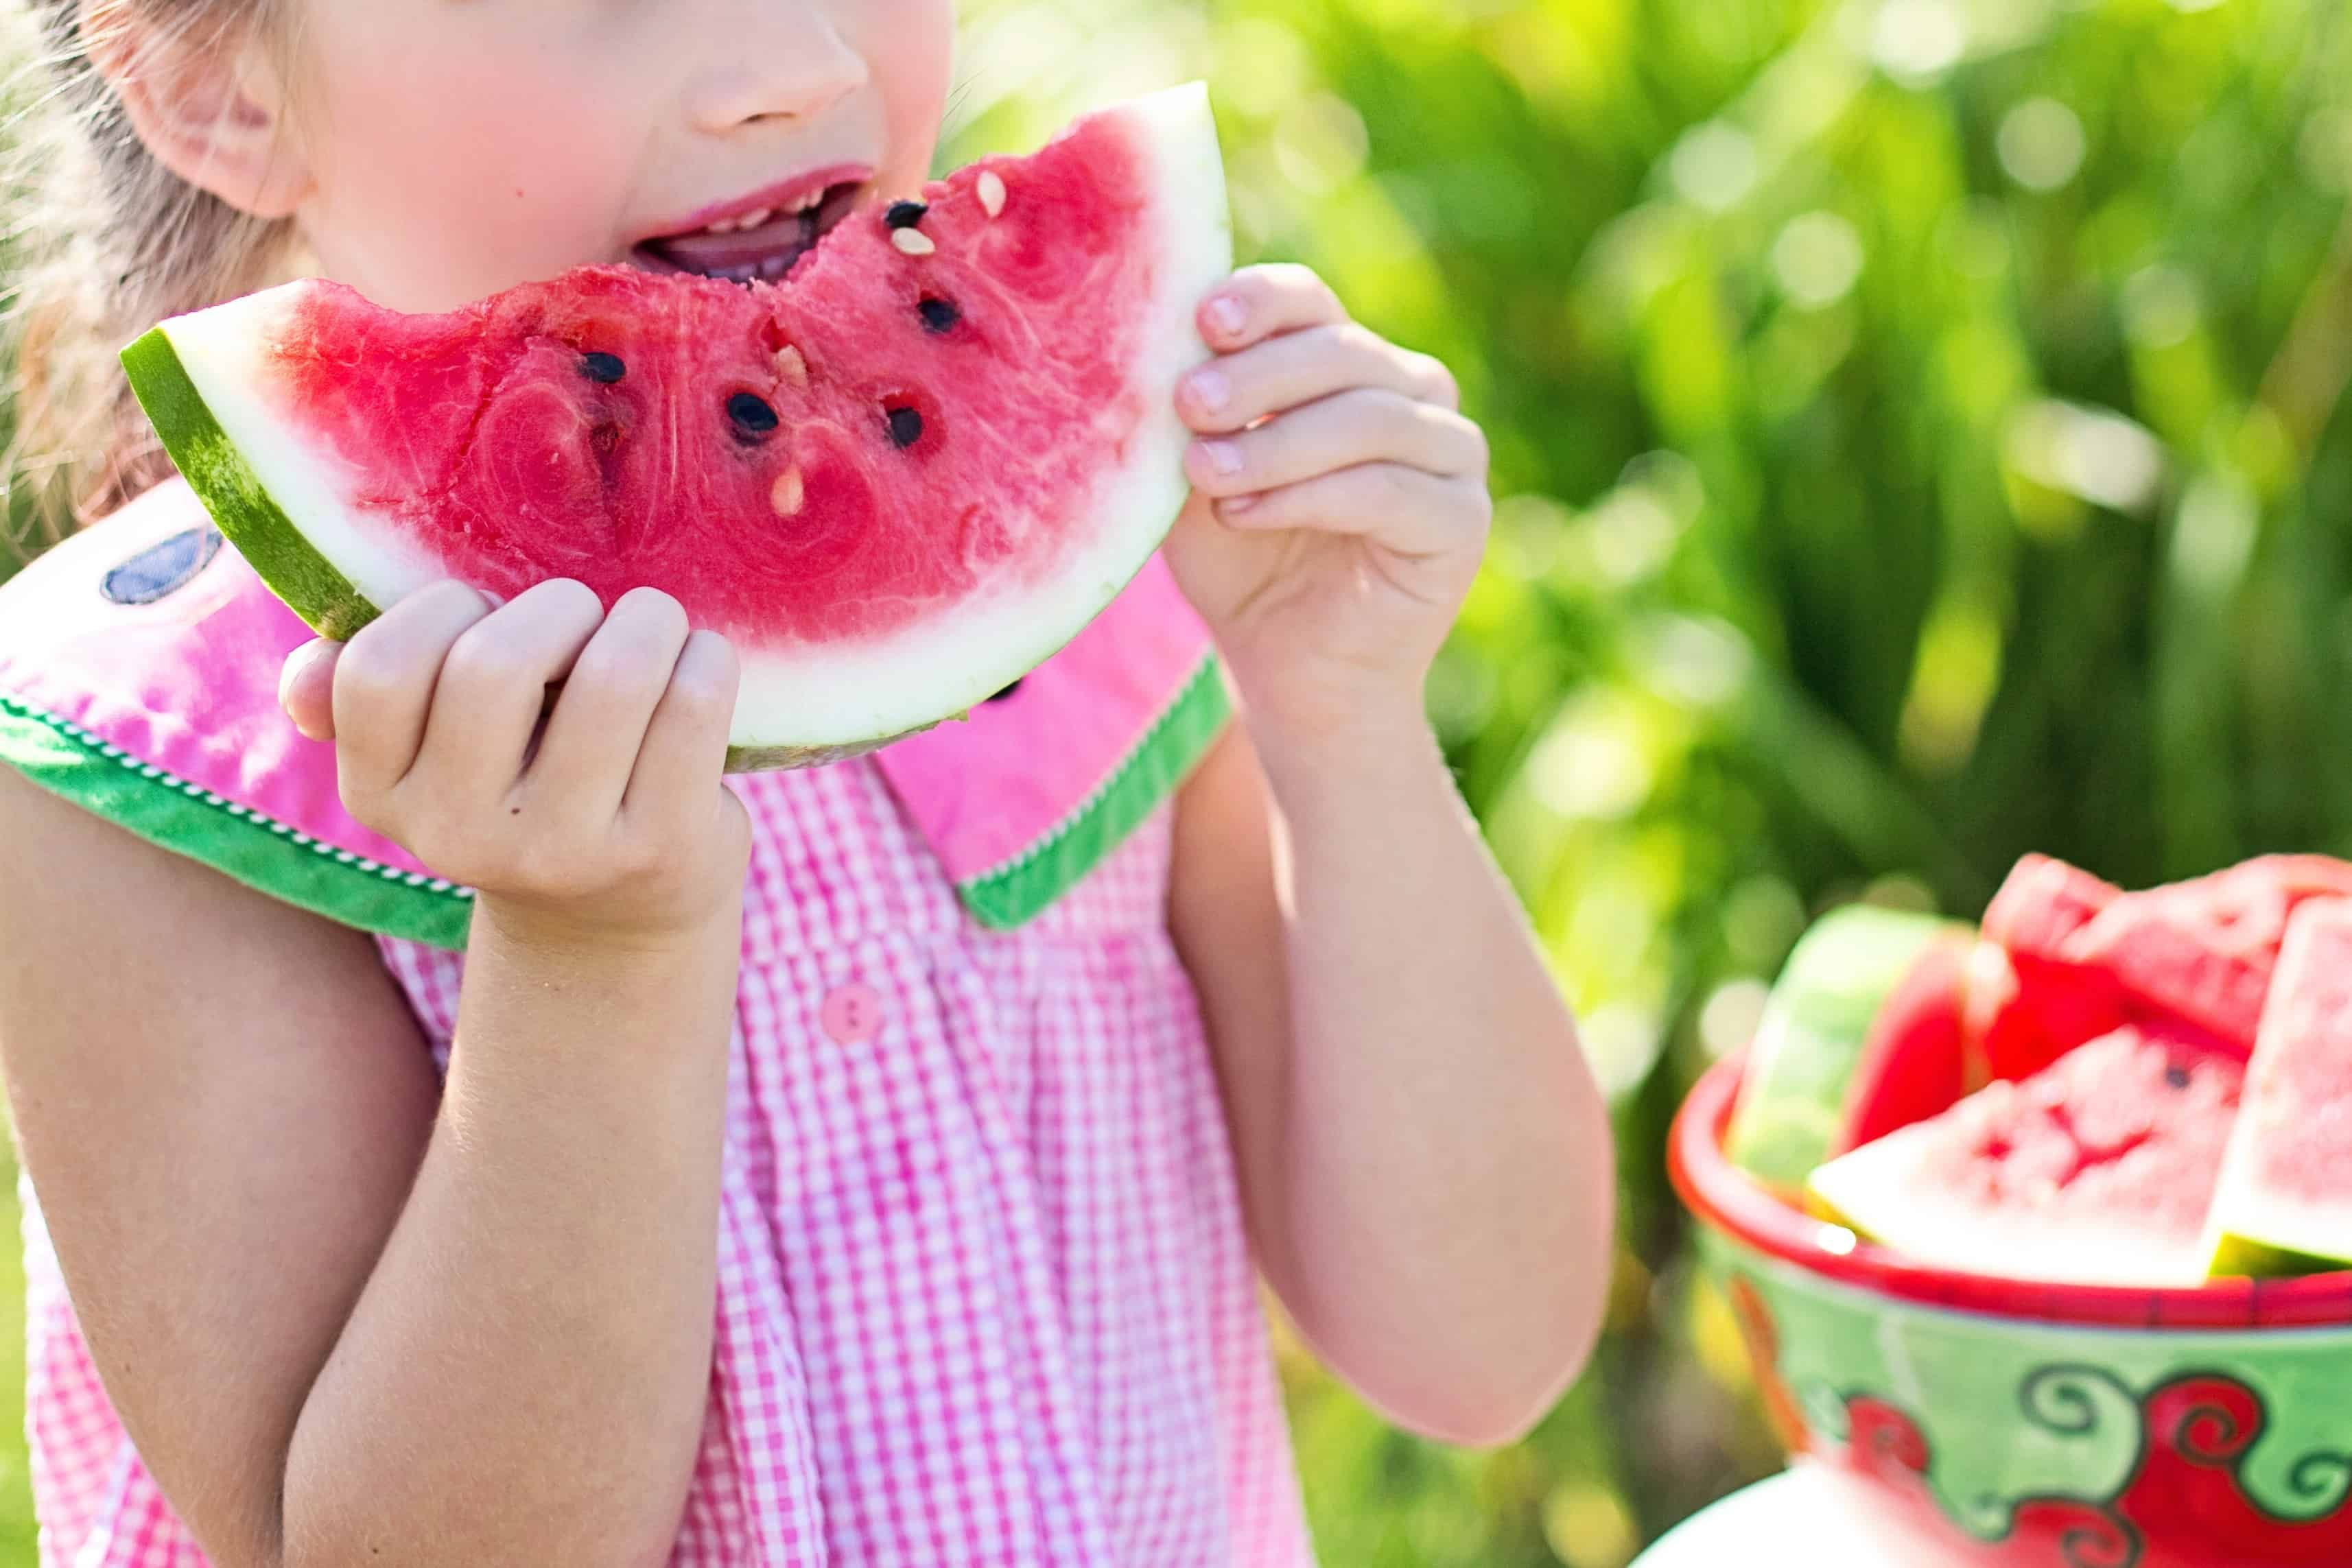 Menina loira comendo um pedaço de melancia, alimento natural que ajuda a aumentar a imunidade infantil.